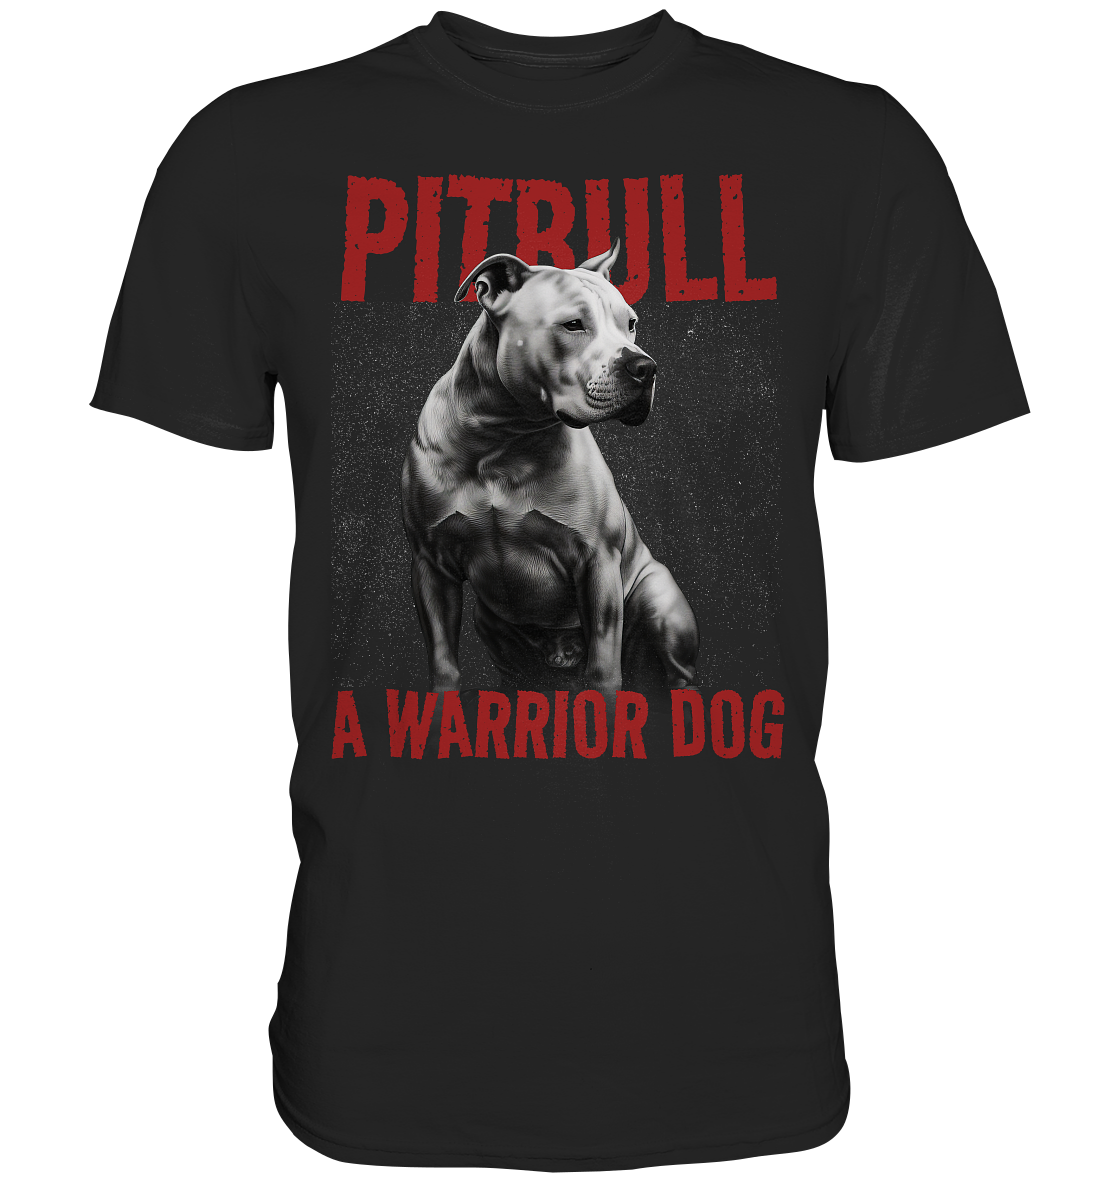 American Pitbull Terrier - Premium Shirt